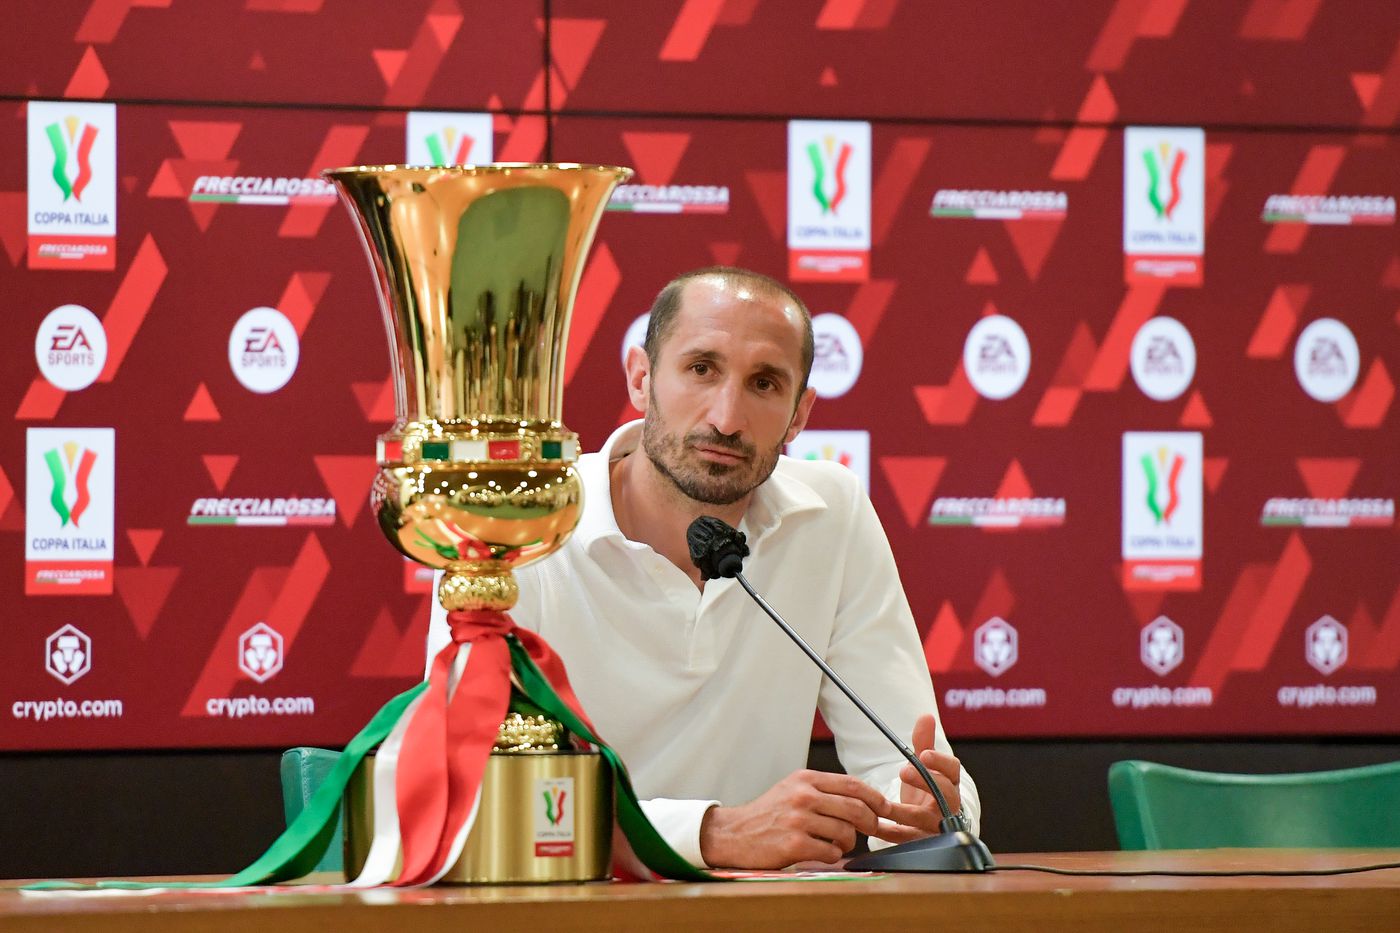 Ý kiến: Ba lý do tại sao chức vô địch Coppa Italia có ý nghĩa quan trọng đối với Juventus